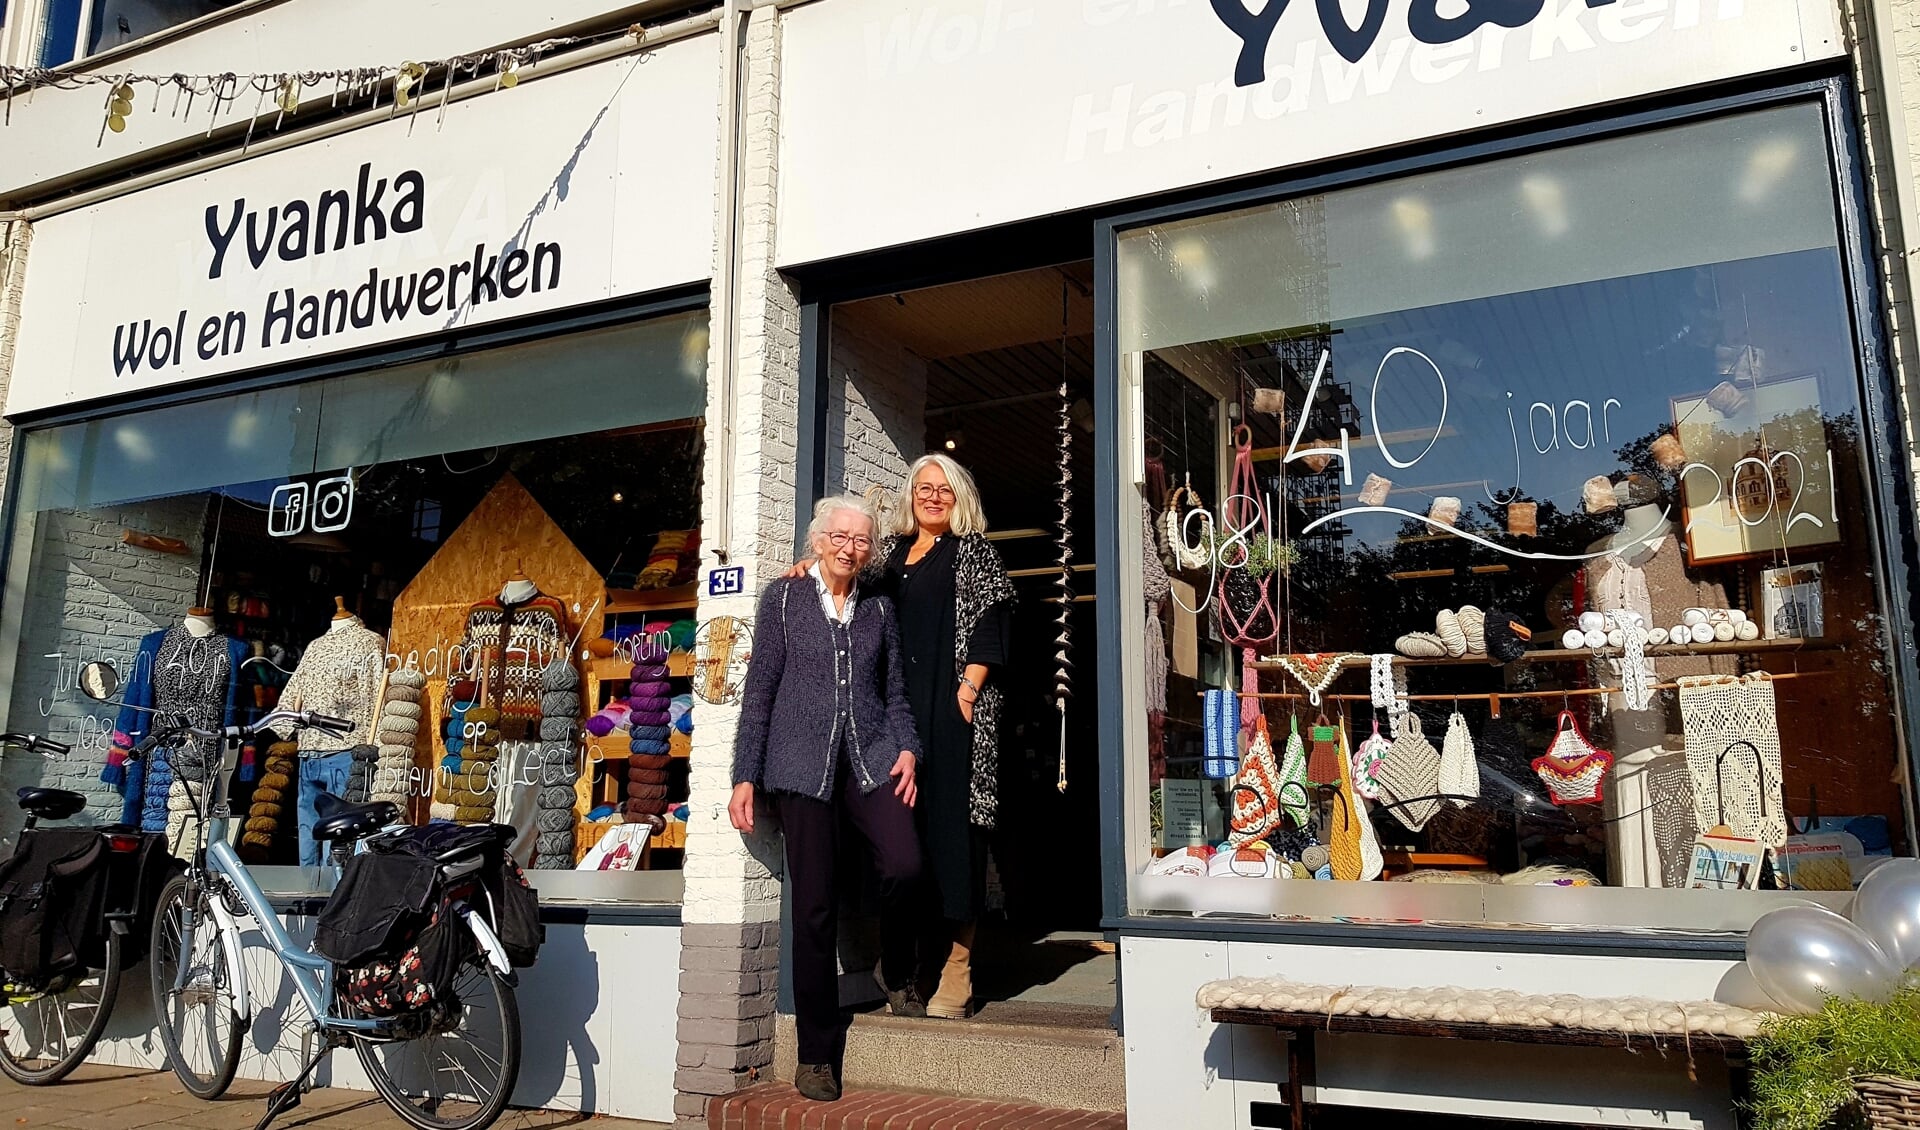 Eigenaresse Ria Leushuis en dochter Marit vol trots voor hun handwerkzaak, die al 40 jaar is gevestigd aan de Oldenzaalsestraat. Foto: L. Meijer.